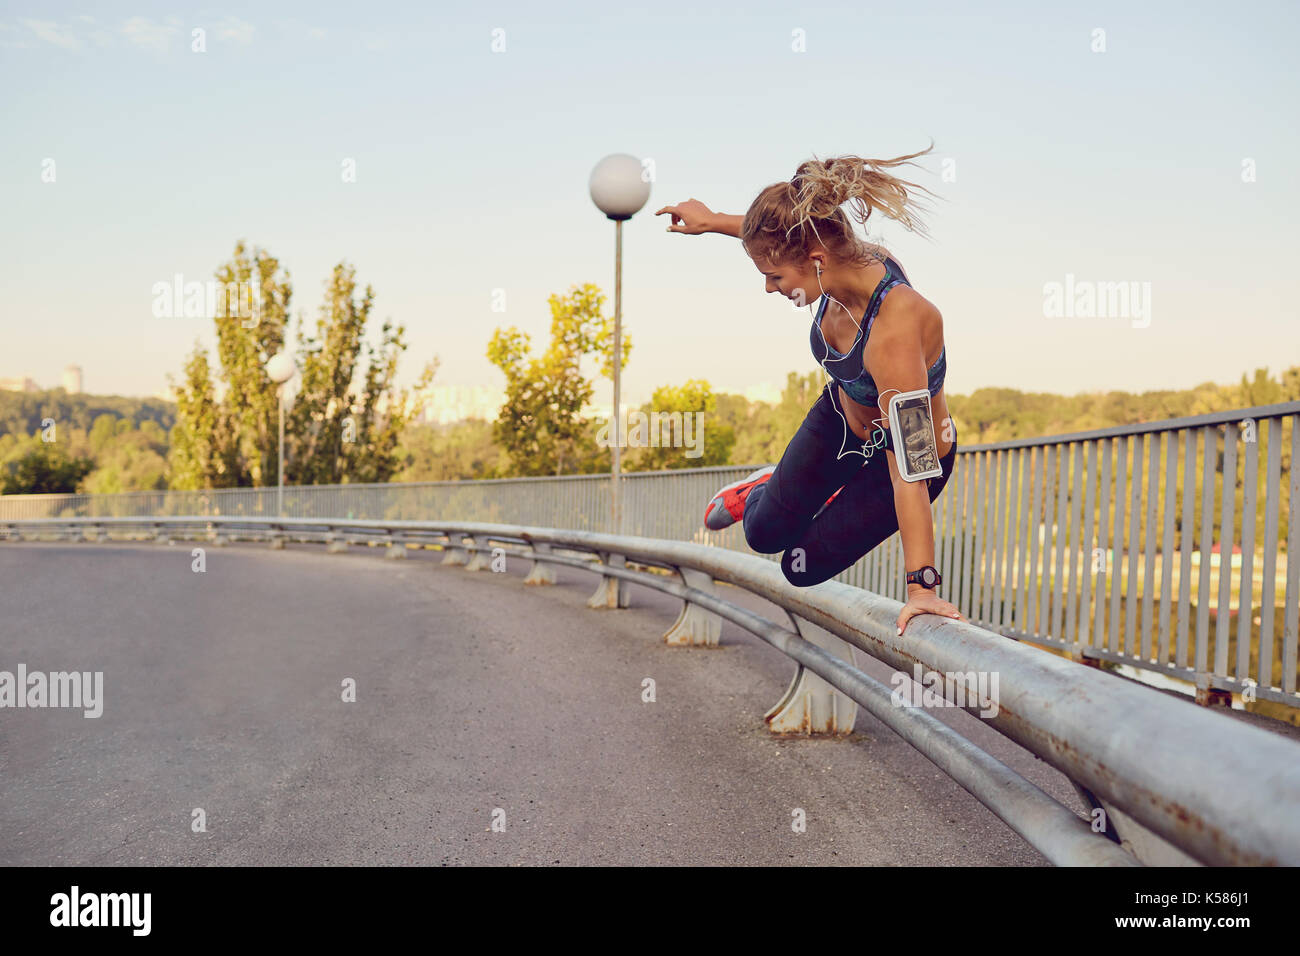 Una ragazza runner salta sopra una ringhiera su un ponte della città. Foto Stock